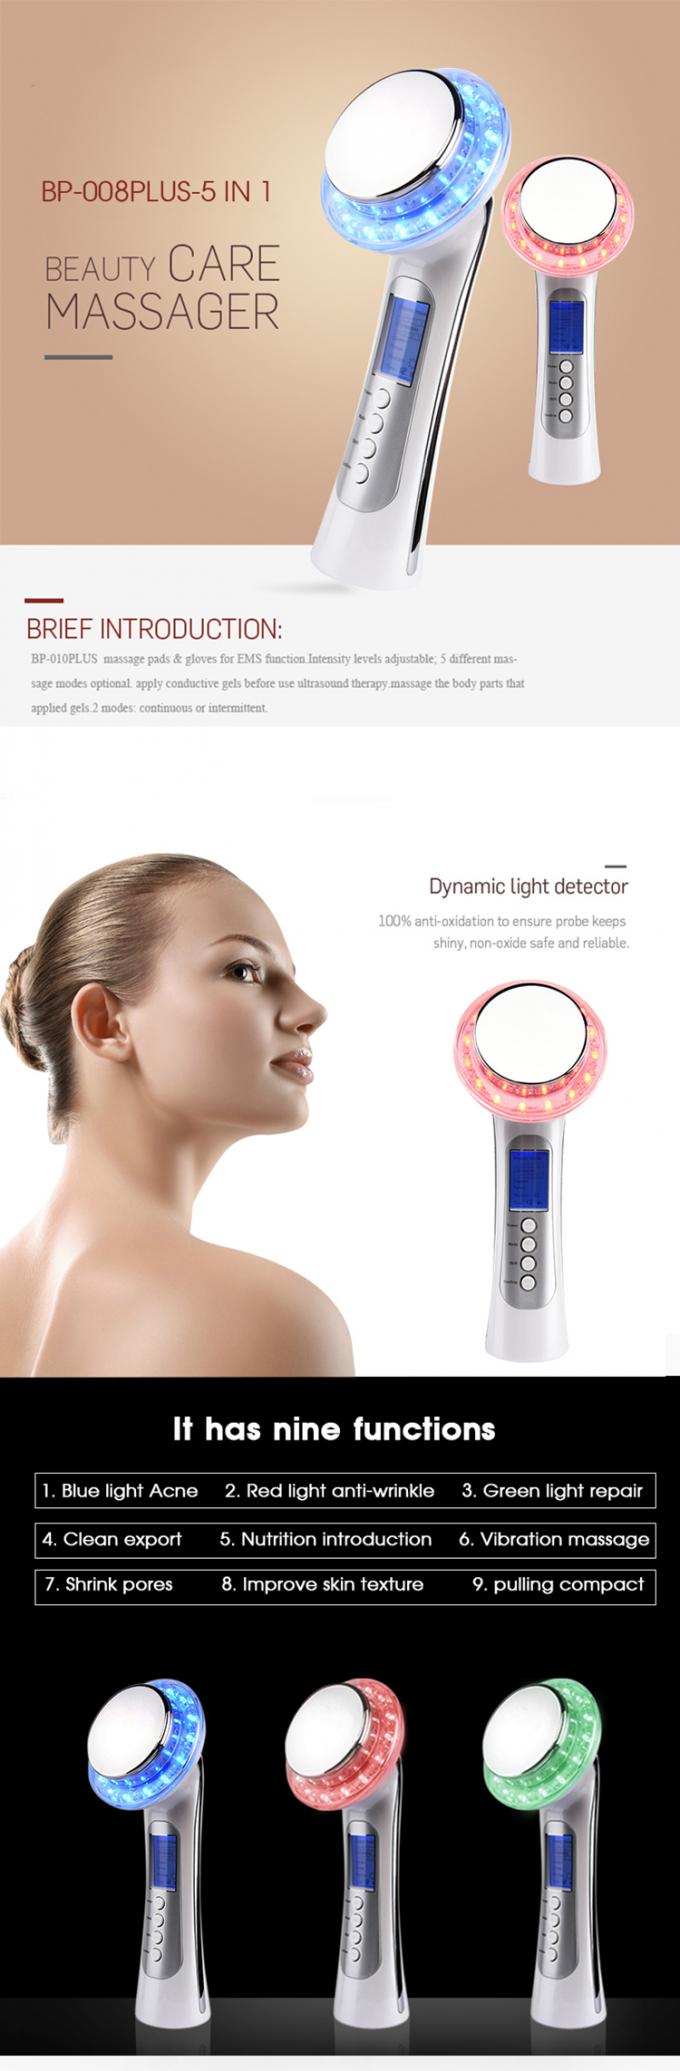 Photon Ultrasonic Ion Face Beauty Stimulator , Ultrasonic Face & Body Massager